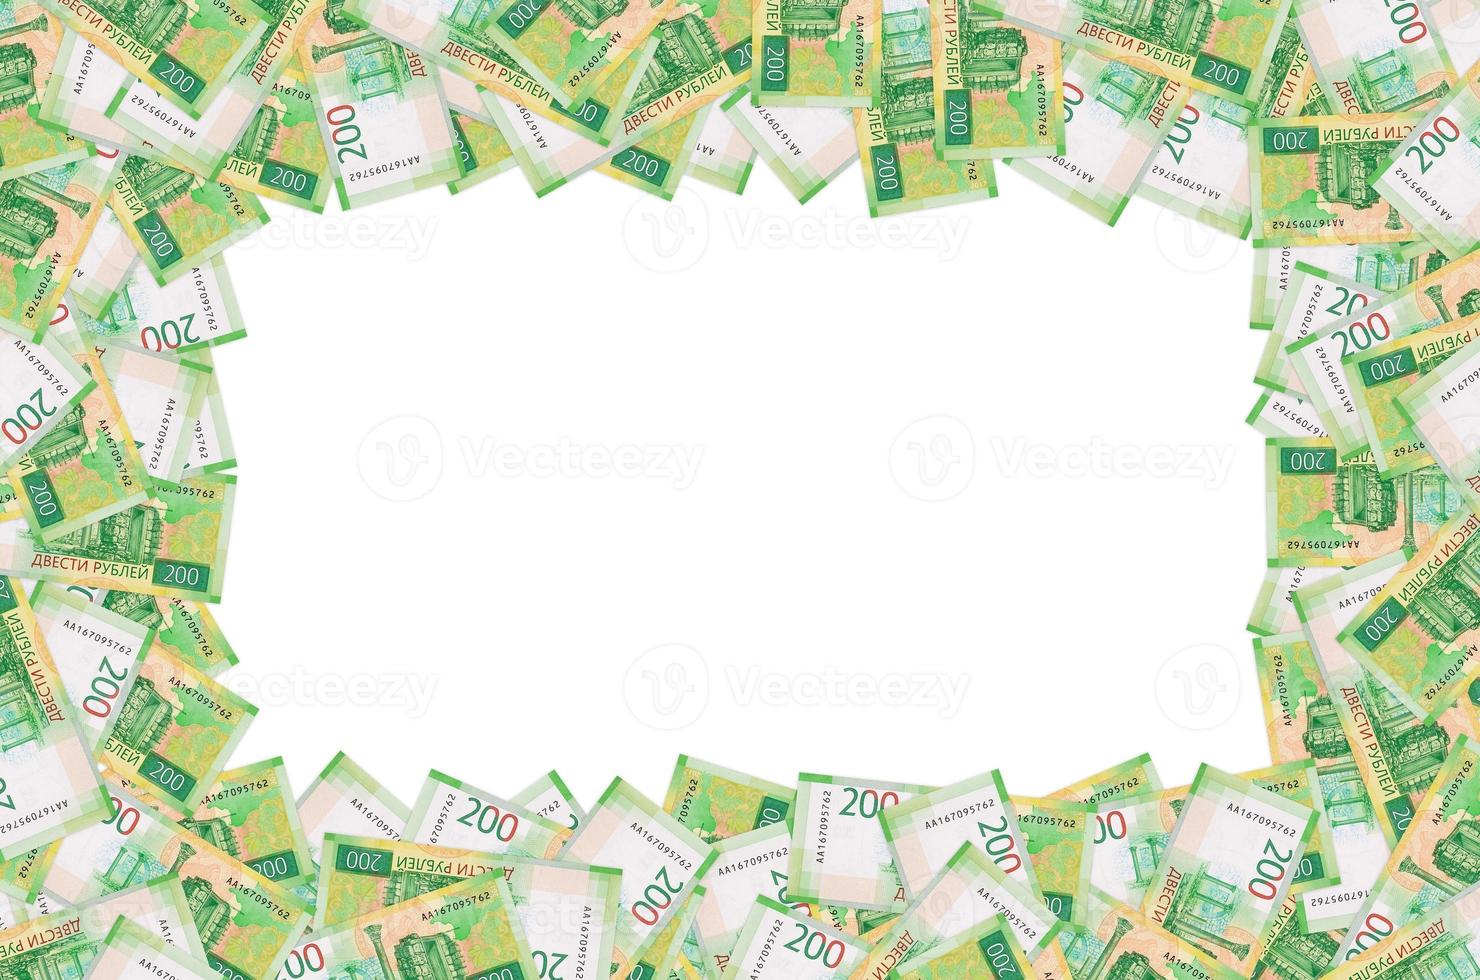 Avis de chersonesos tauriques sur le nouveau billet de 200 roubles russe vert 2017 photo